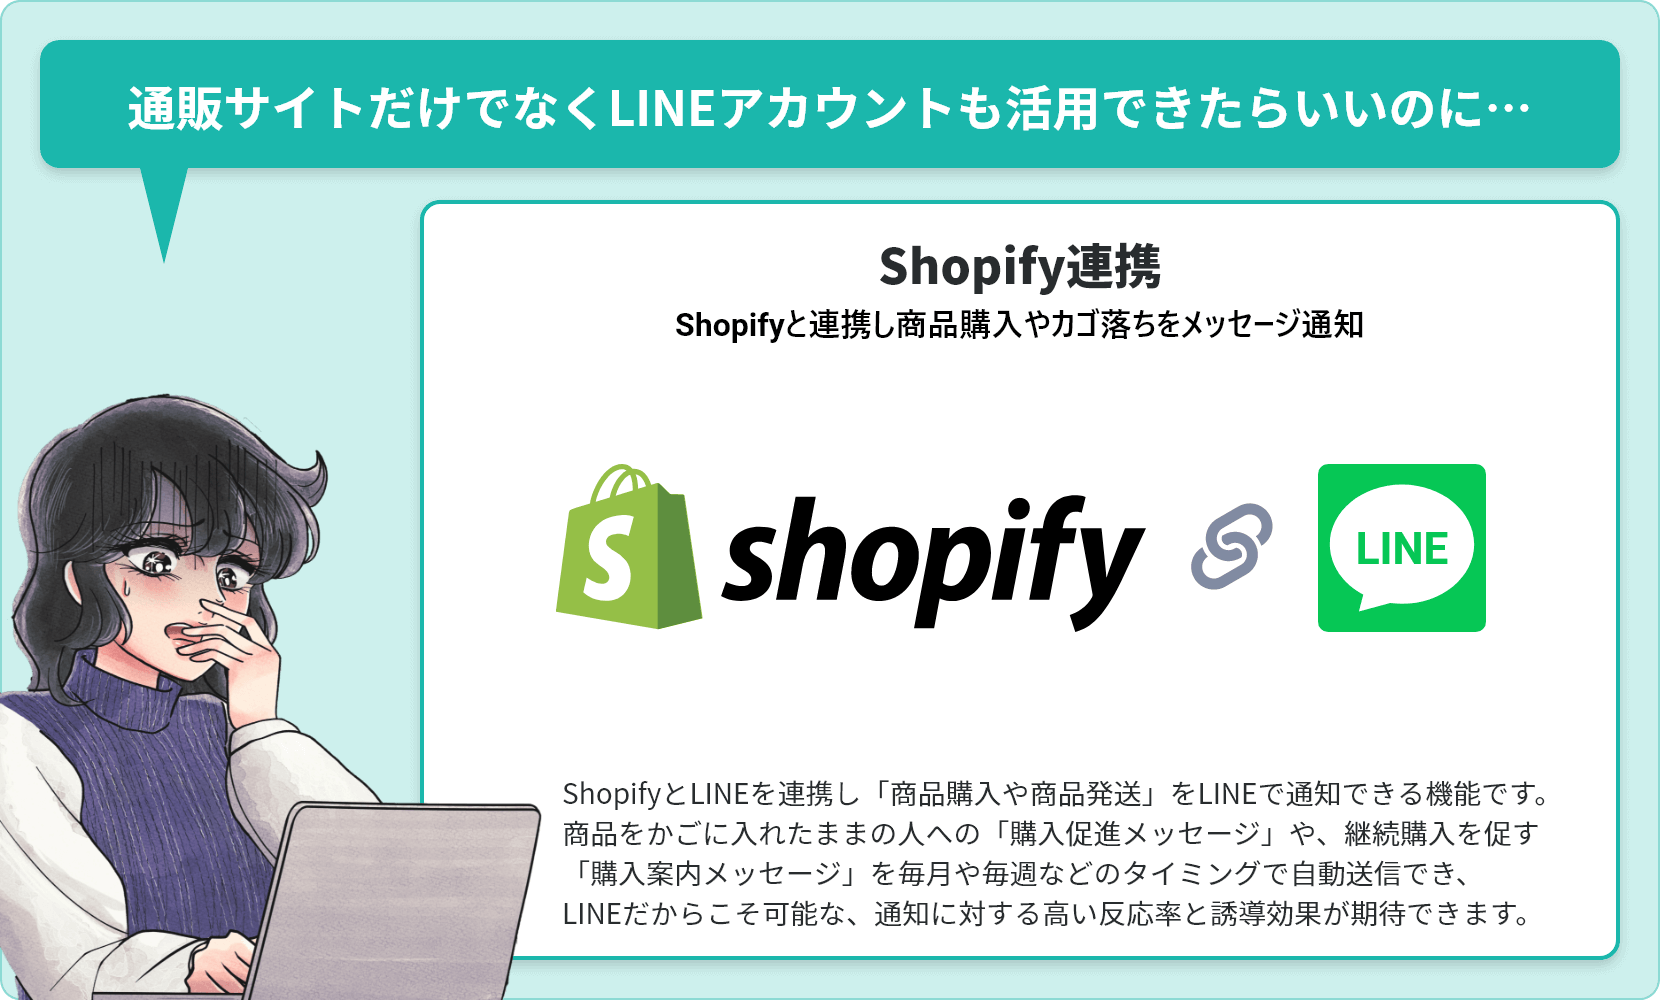 通販サイトだけでなくLINEアカウントも活用できたらいいのに…【Shopify連携（Shopifyと連携し商品購入やカゴ落ちをメッセージ通知）】ShopifyとLINEを連携し「商品購入や商品発送」をLINEで通知できる機能です。商品をかごに入れたままの人への「購入促進メッセージ」や、継続購入を促す「購入案内メッセージ」を毎月や毎週などのタイミングで自動送信でき、LINEだからこそ可能な、通知に対する高い反応率と誘導効果が期待できます。